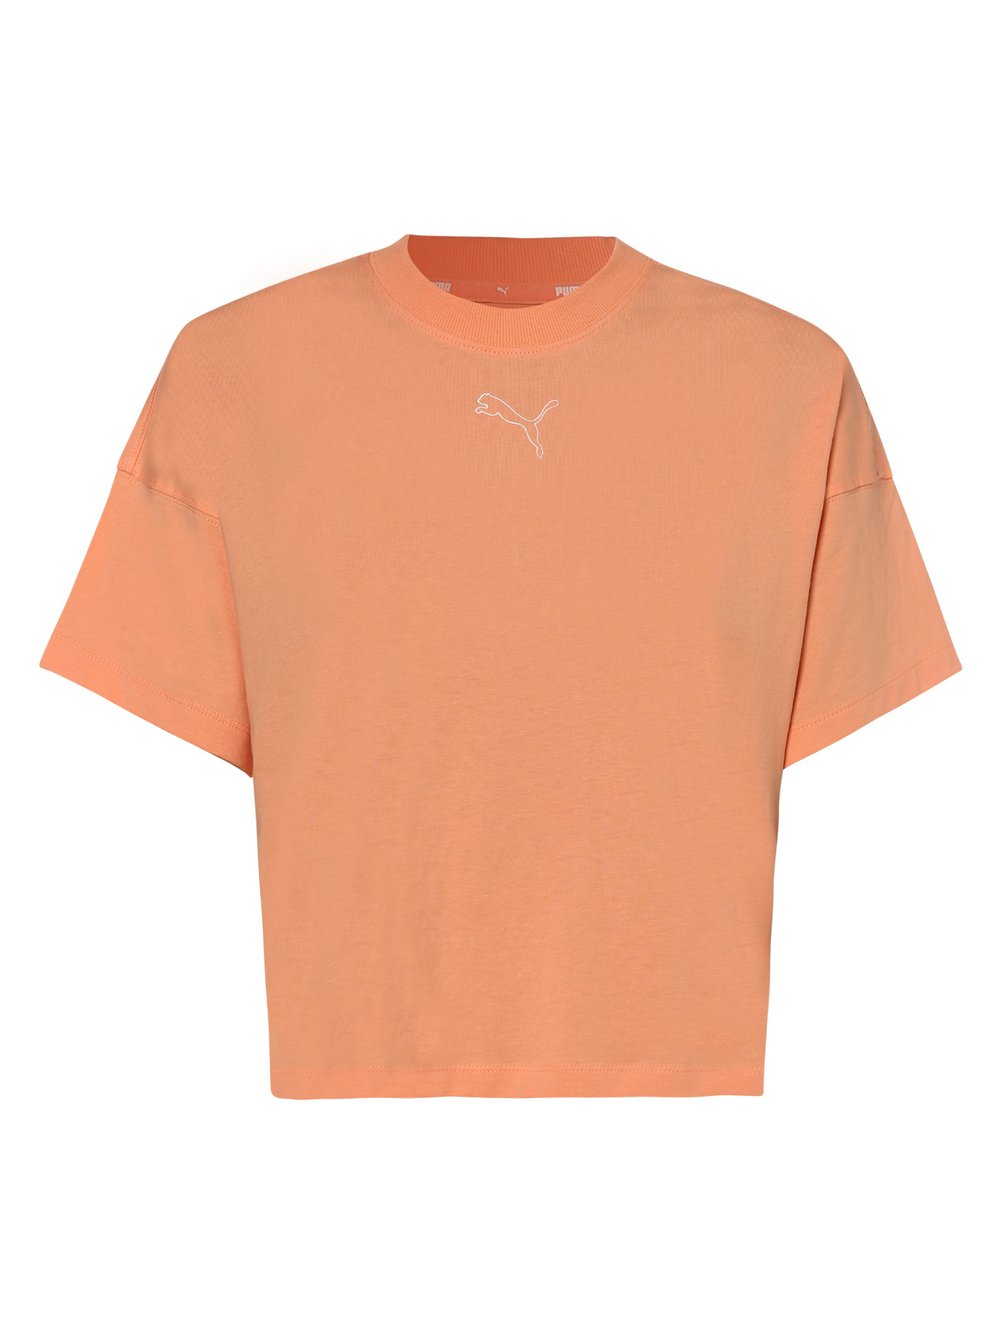 Puma - T-shirt damski, pomarańczowy